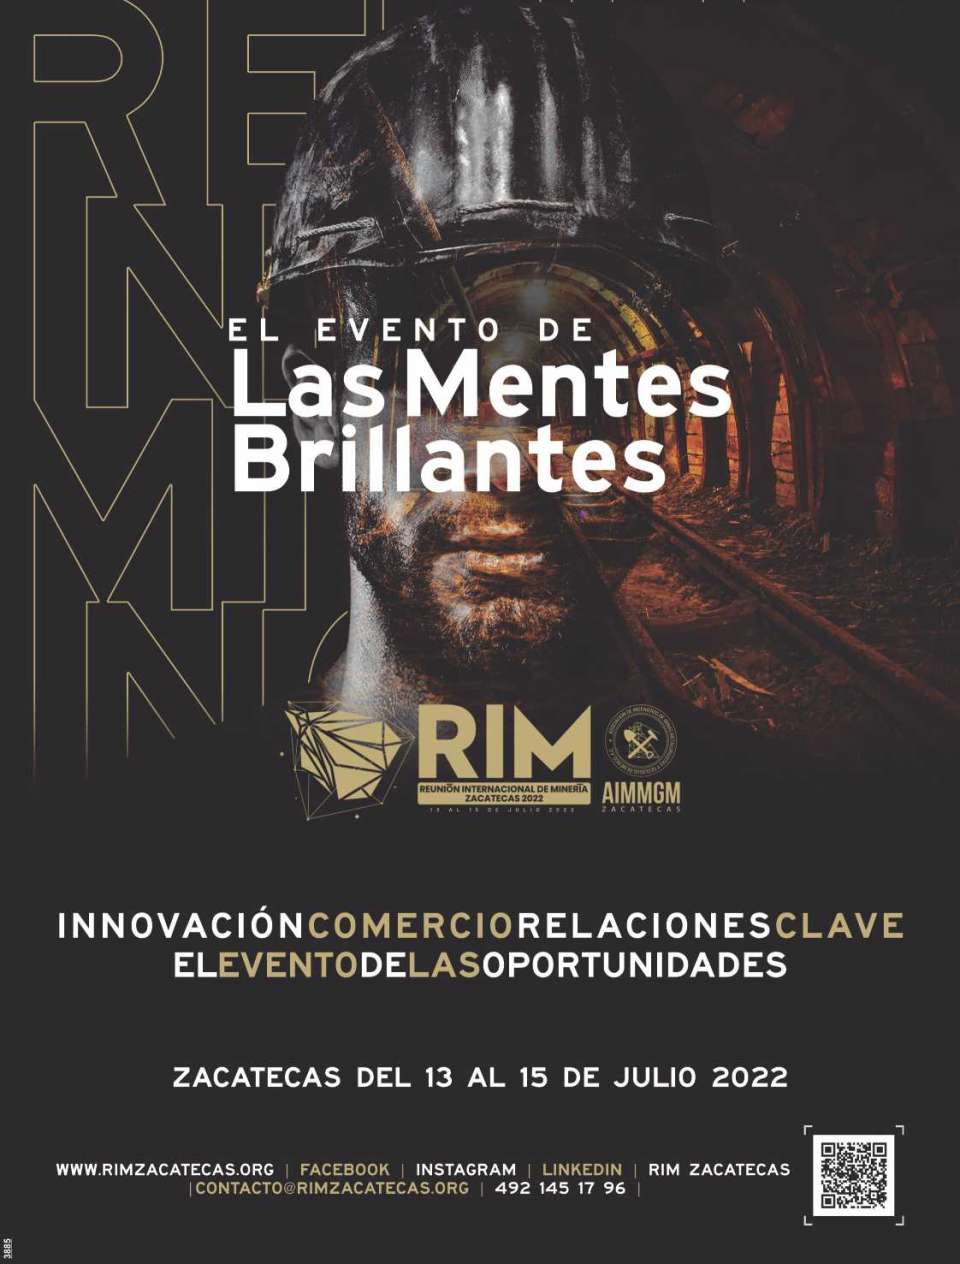 En el Palacio de Convenciones de Zacatecas del 13 al 15 de Julio 2022. El evento minero de las mentes brillantes.